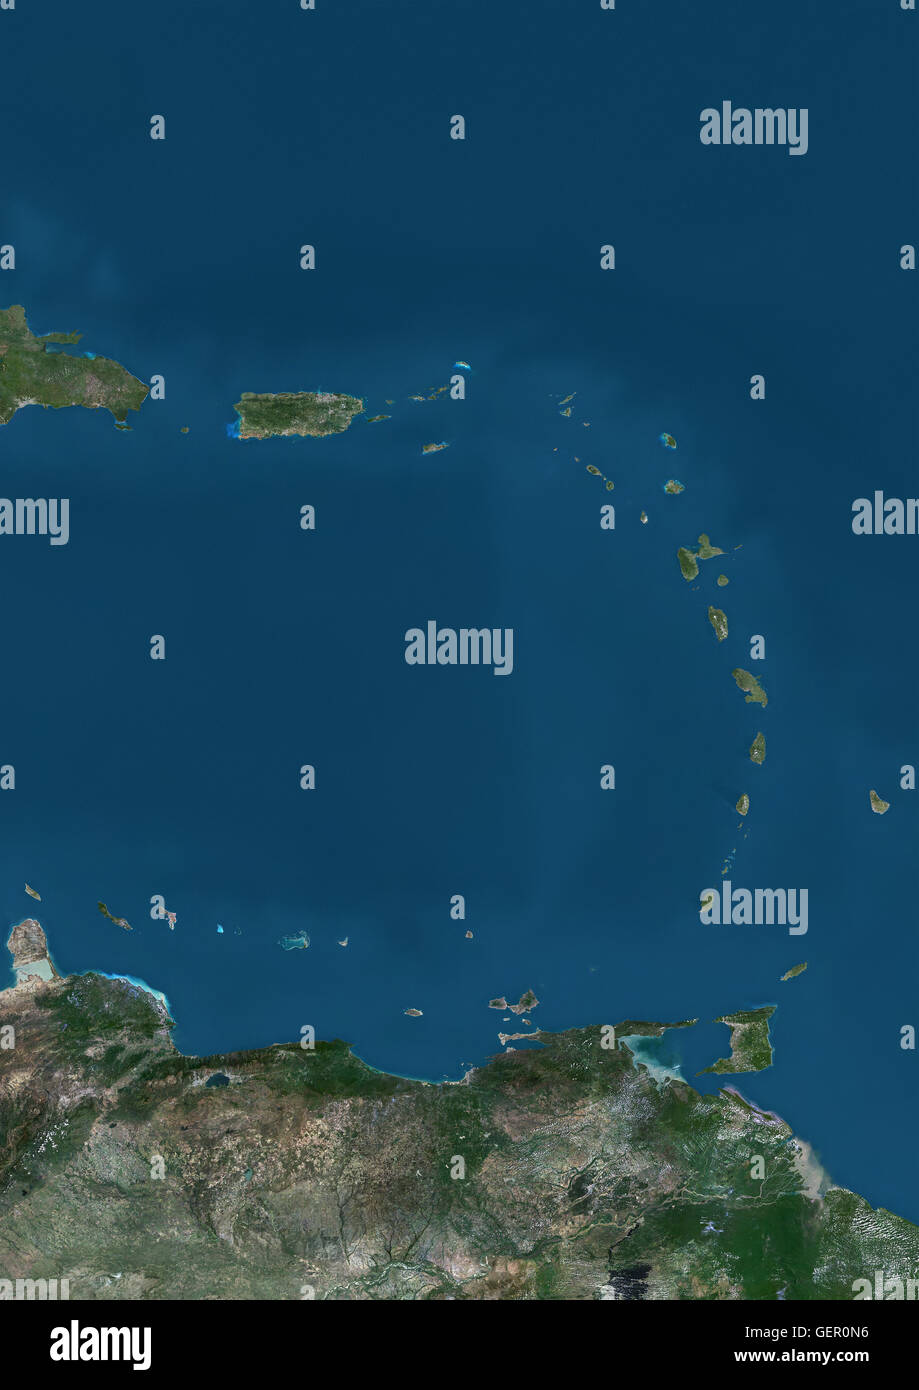 Vista satélite de las islas de las Antillas Menores y Puerto Rico y Puerto  Rico en el Caribe. Esta imagen fue compilado a partir de datos adquiridos  por los satélites Landsat Fotografía